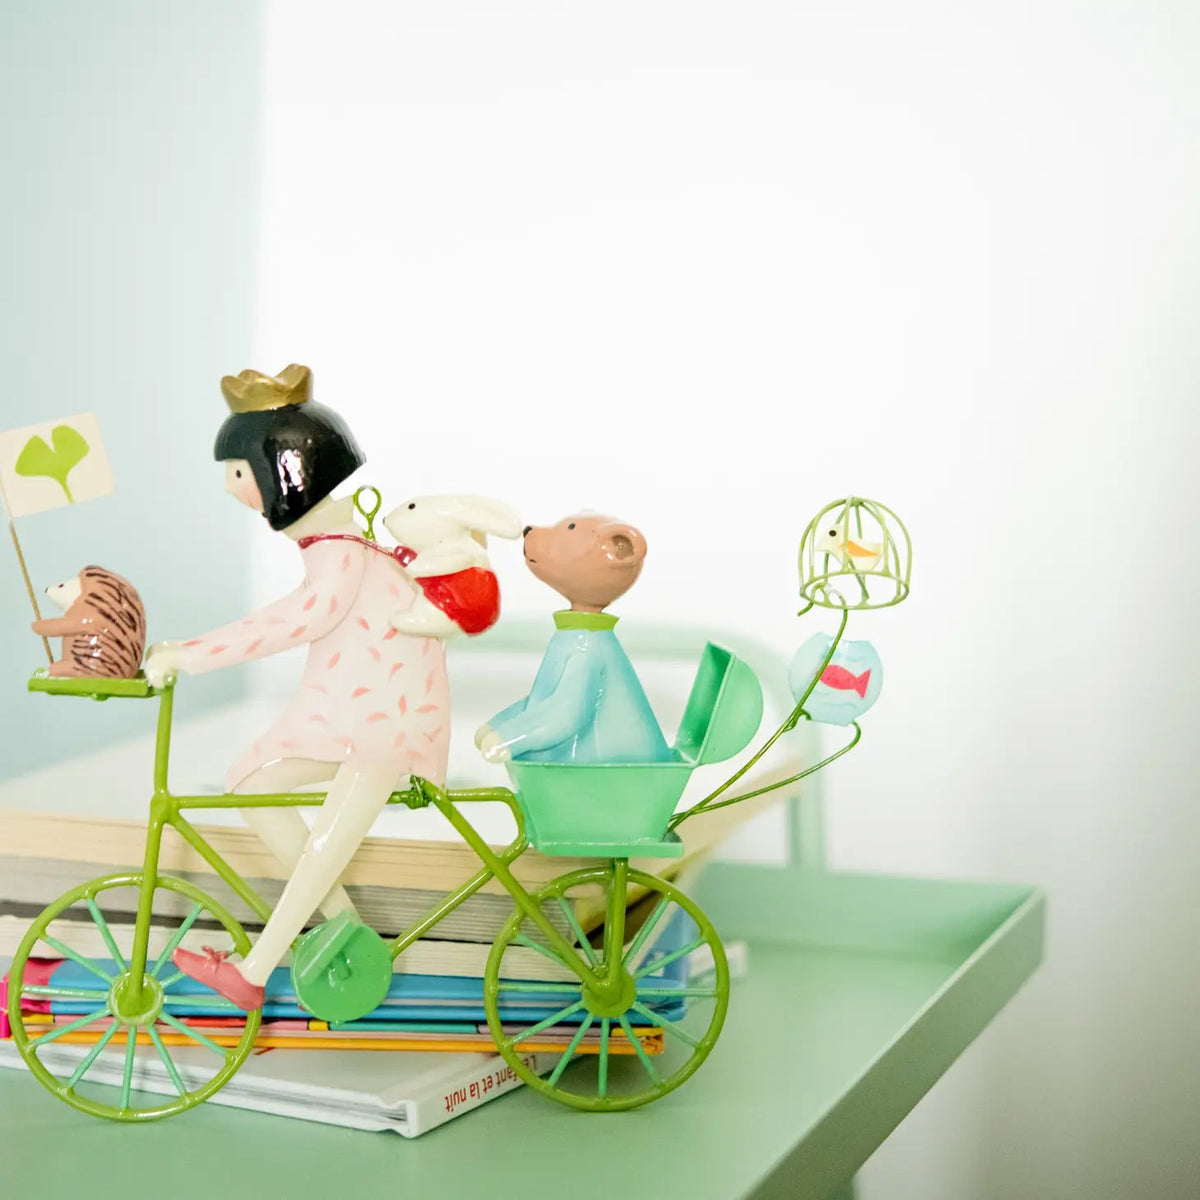 Decorative Mobile | Triplette Lapin et Ourson by l'Oiseau Bateau - Maude Kids Decor